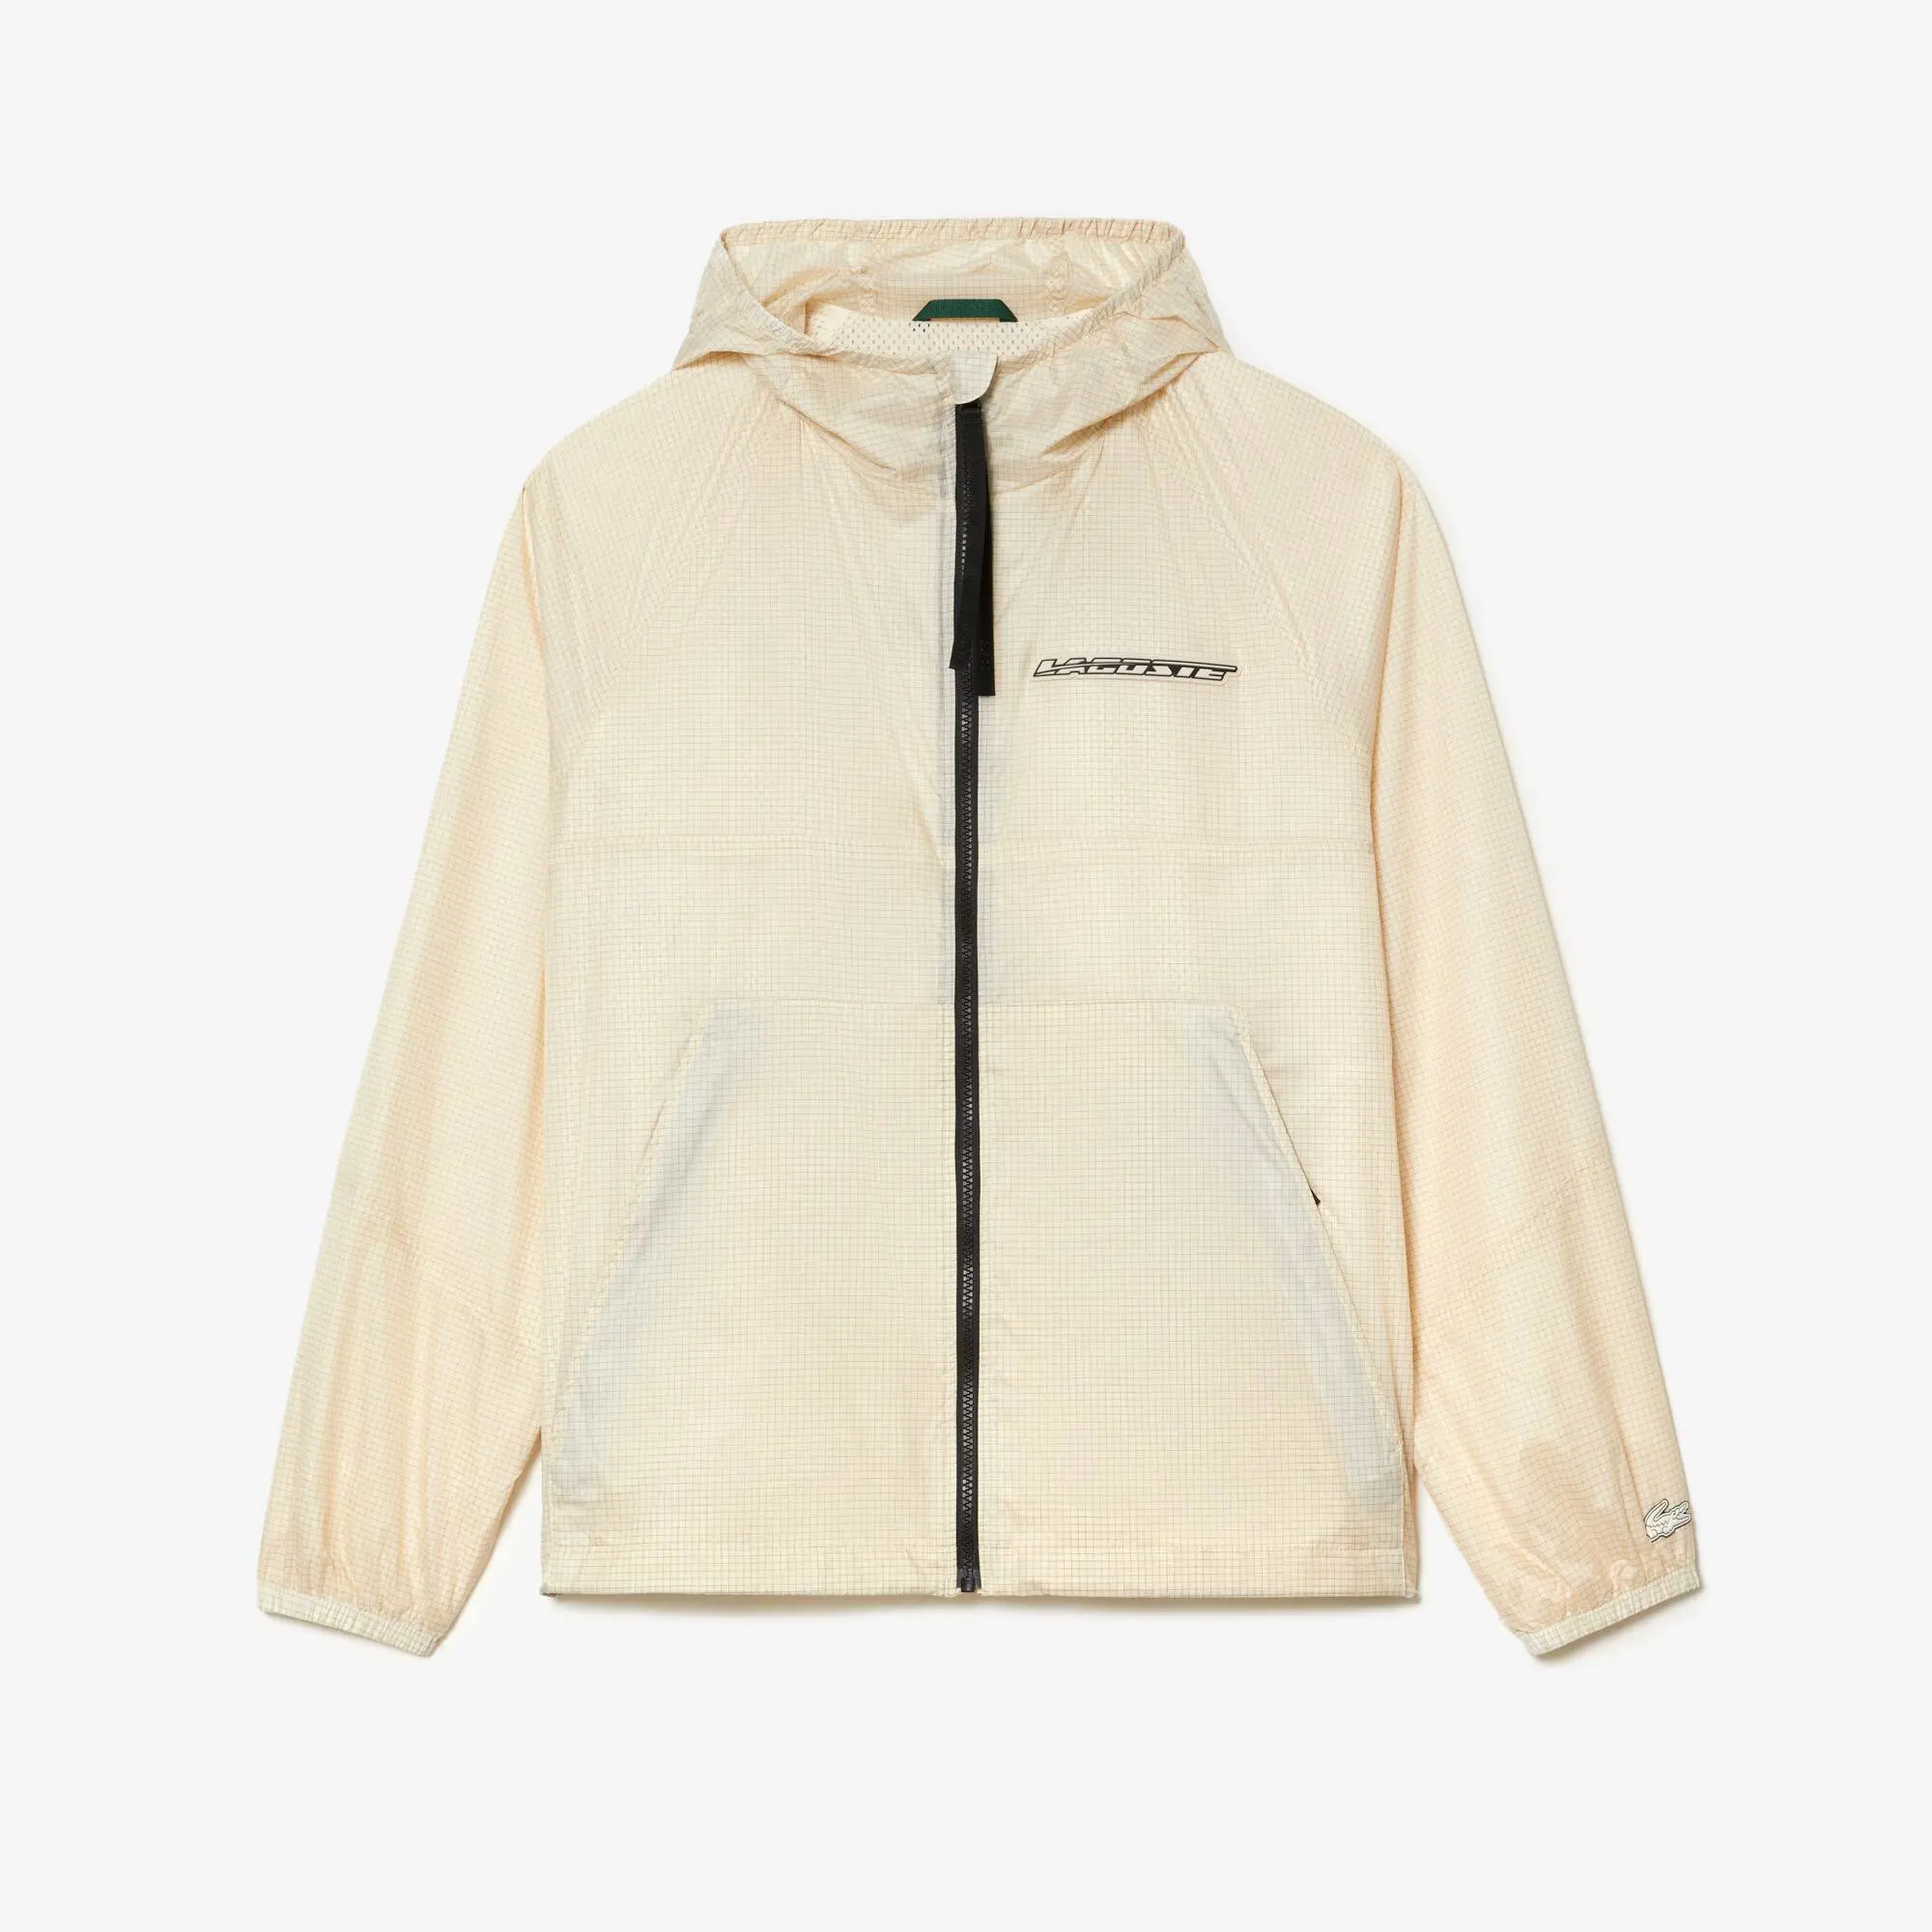 Lacoste Men’s Lacoste Short Zipped Hooded Jacket. 2